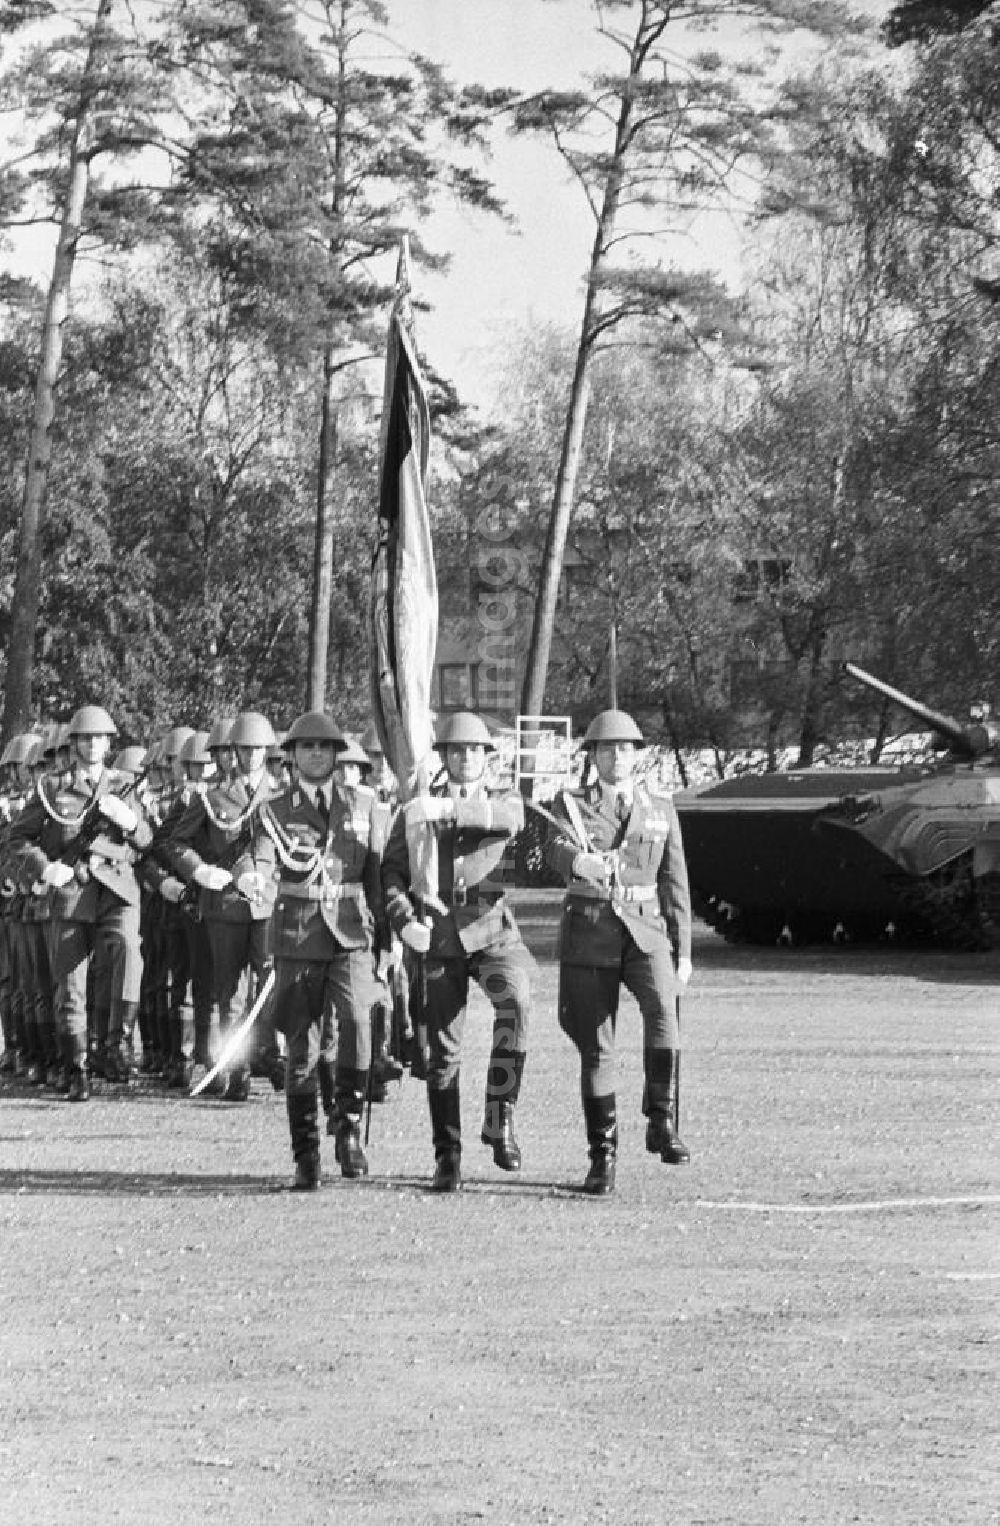 GDR picture archive: Goldberg - Soldaten marschieren an Panzer vorbei. Anlässlich der Auflösung des NVA (Nationale Volksarmee) -Panzerregiment.